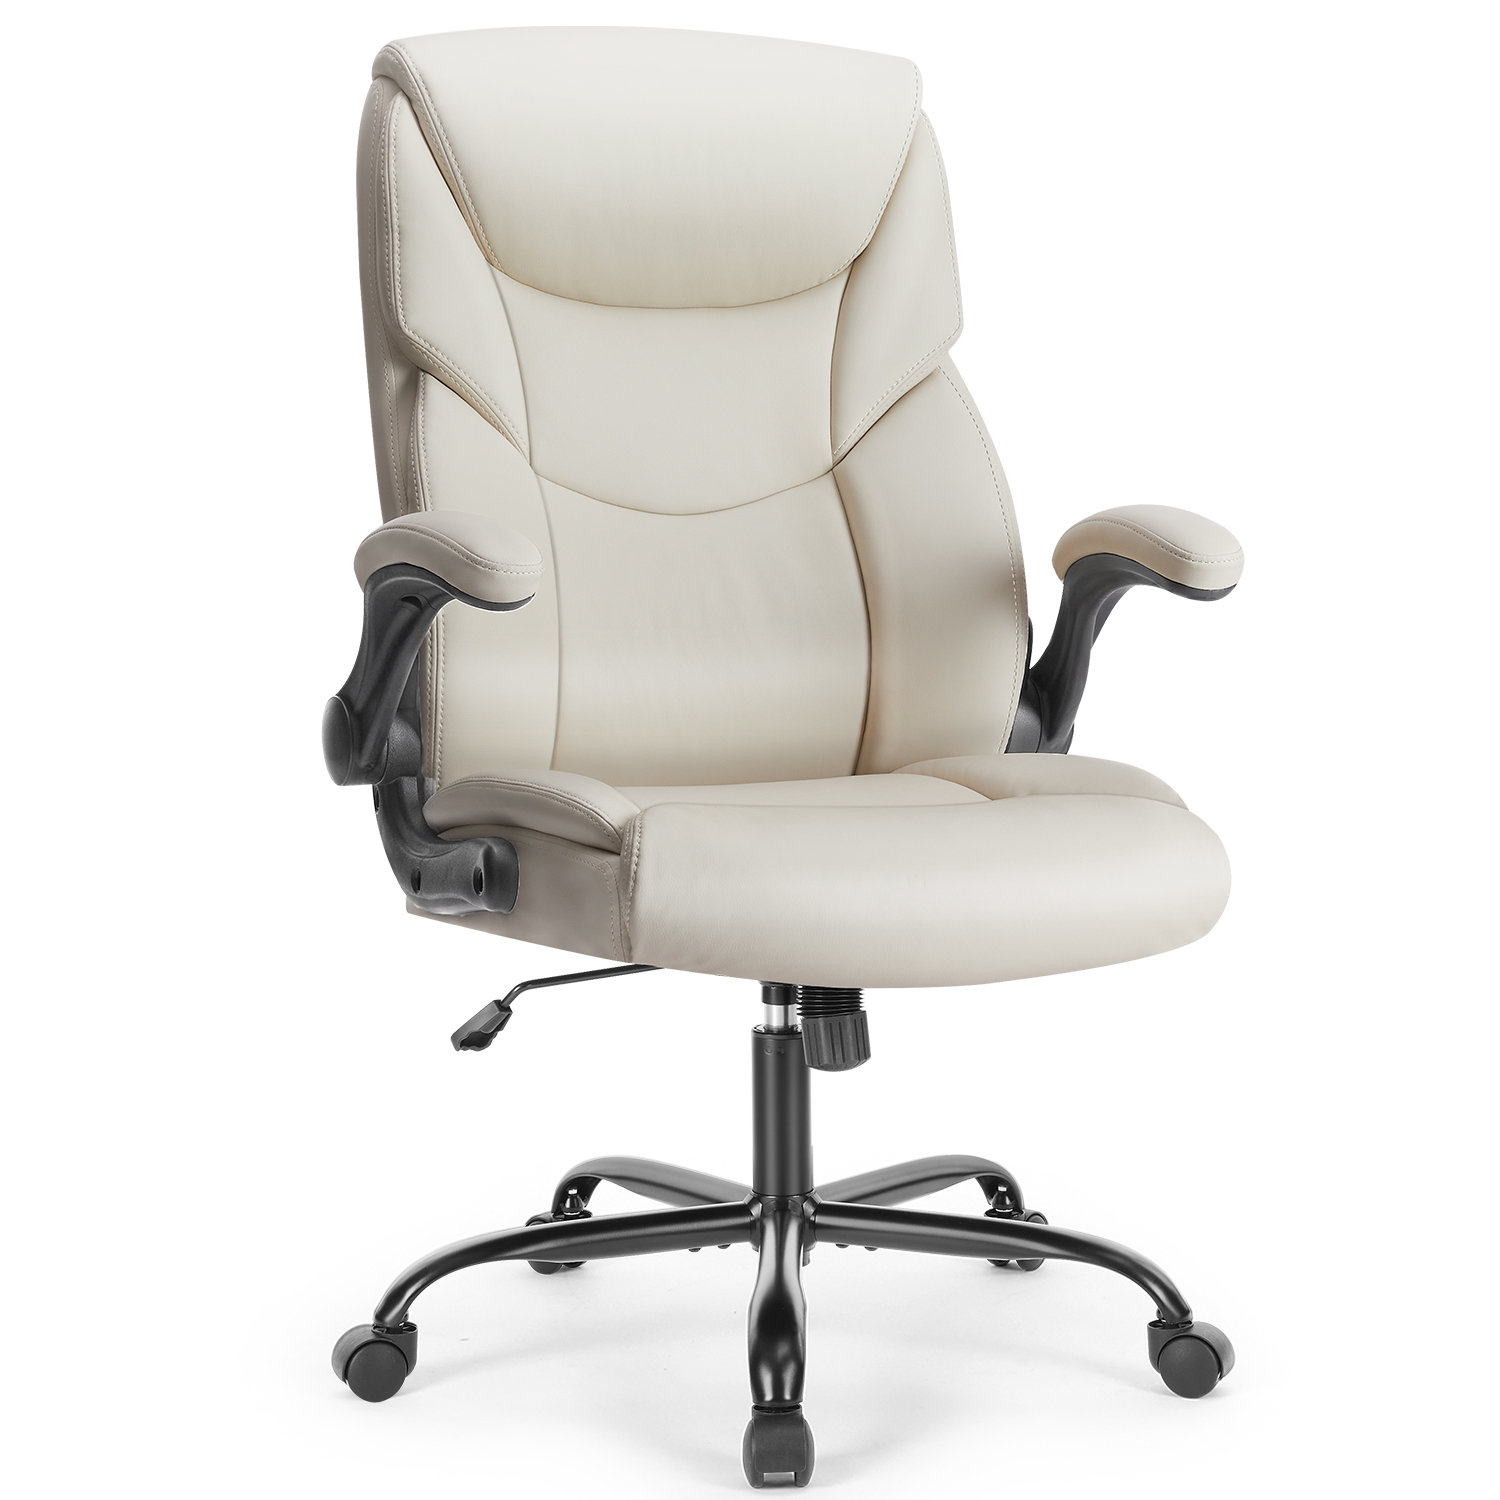 https://assets.wfcdn.com/im/95863877/compr-r85/2418/241859277/ademar-ergonomic-executive-chair-with-headrest.jpg